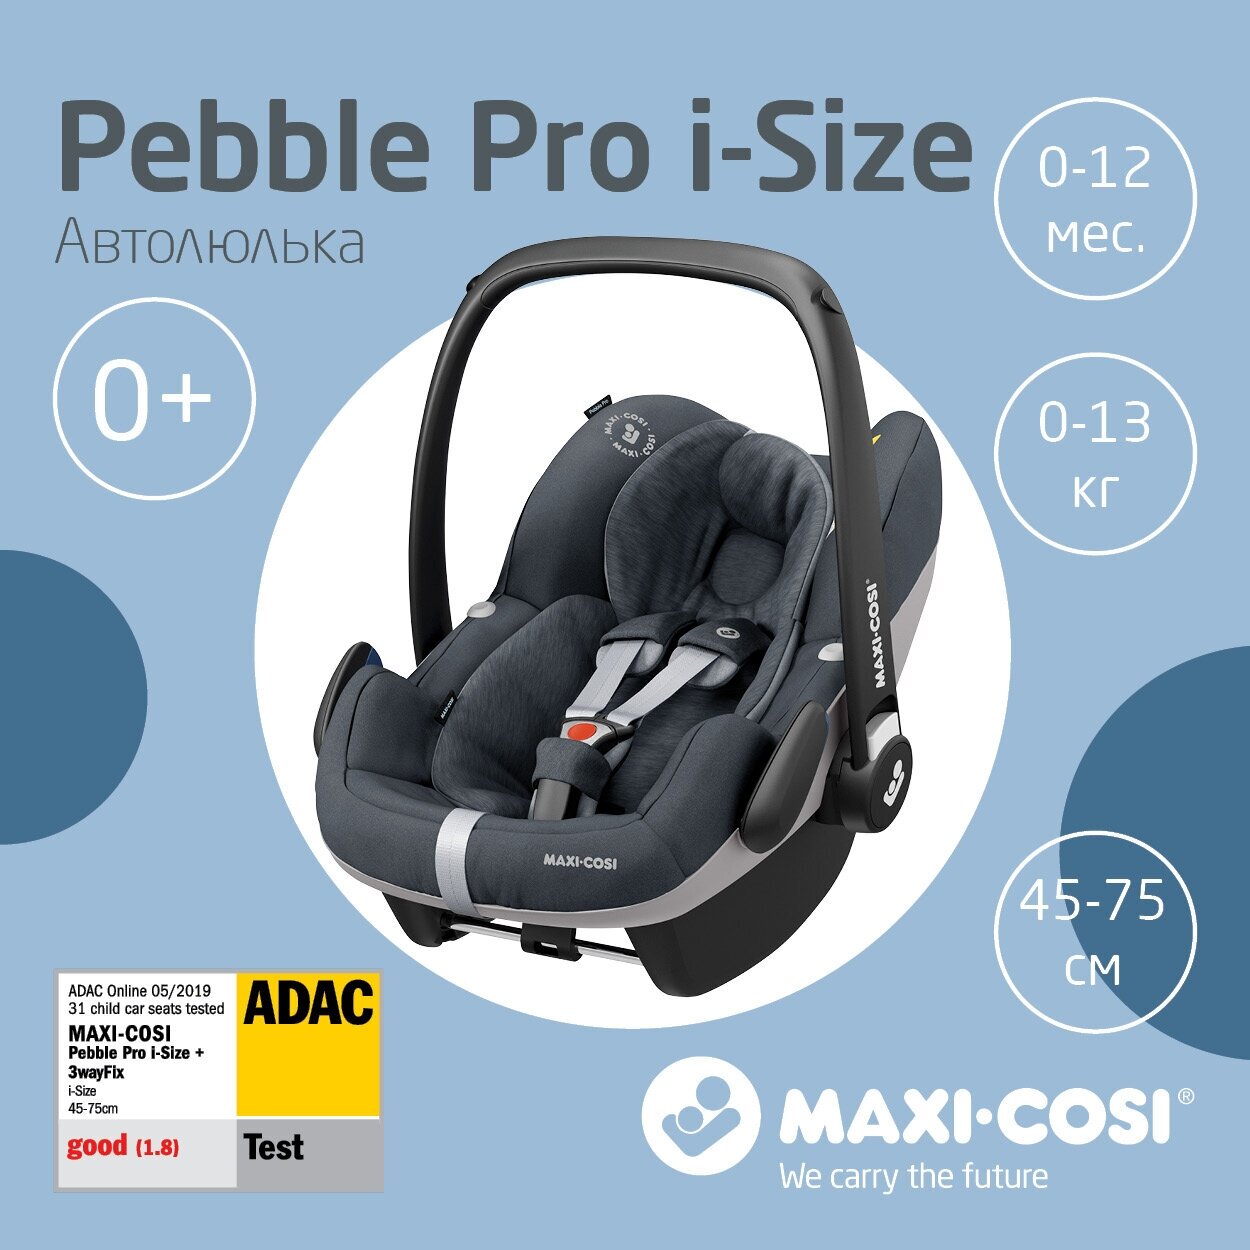   0+ (013) Maxi-Cosi Pebble Pro i-Size Essential Graphite